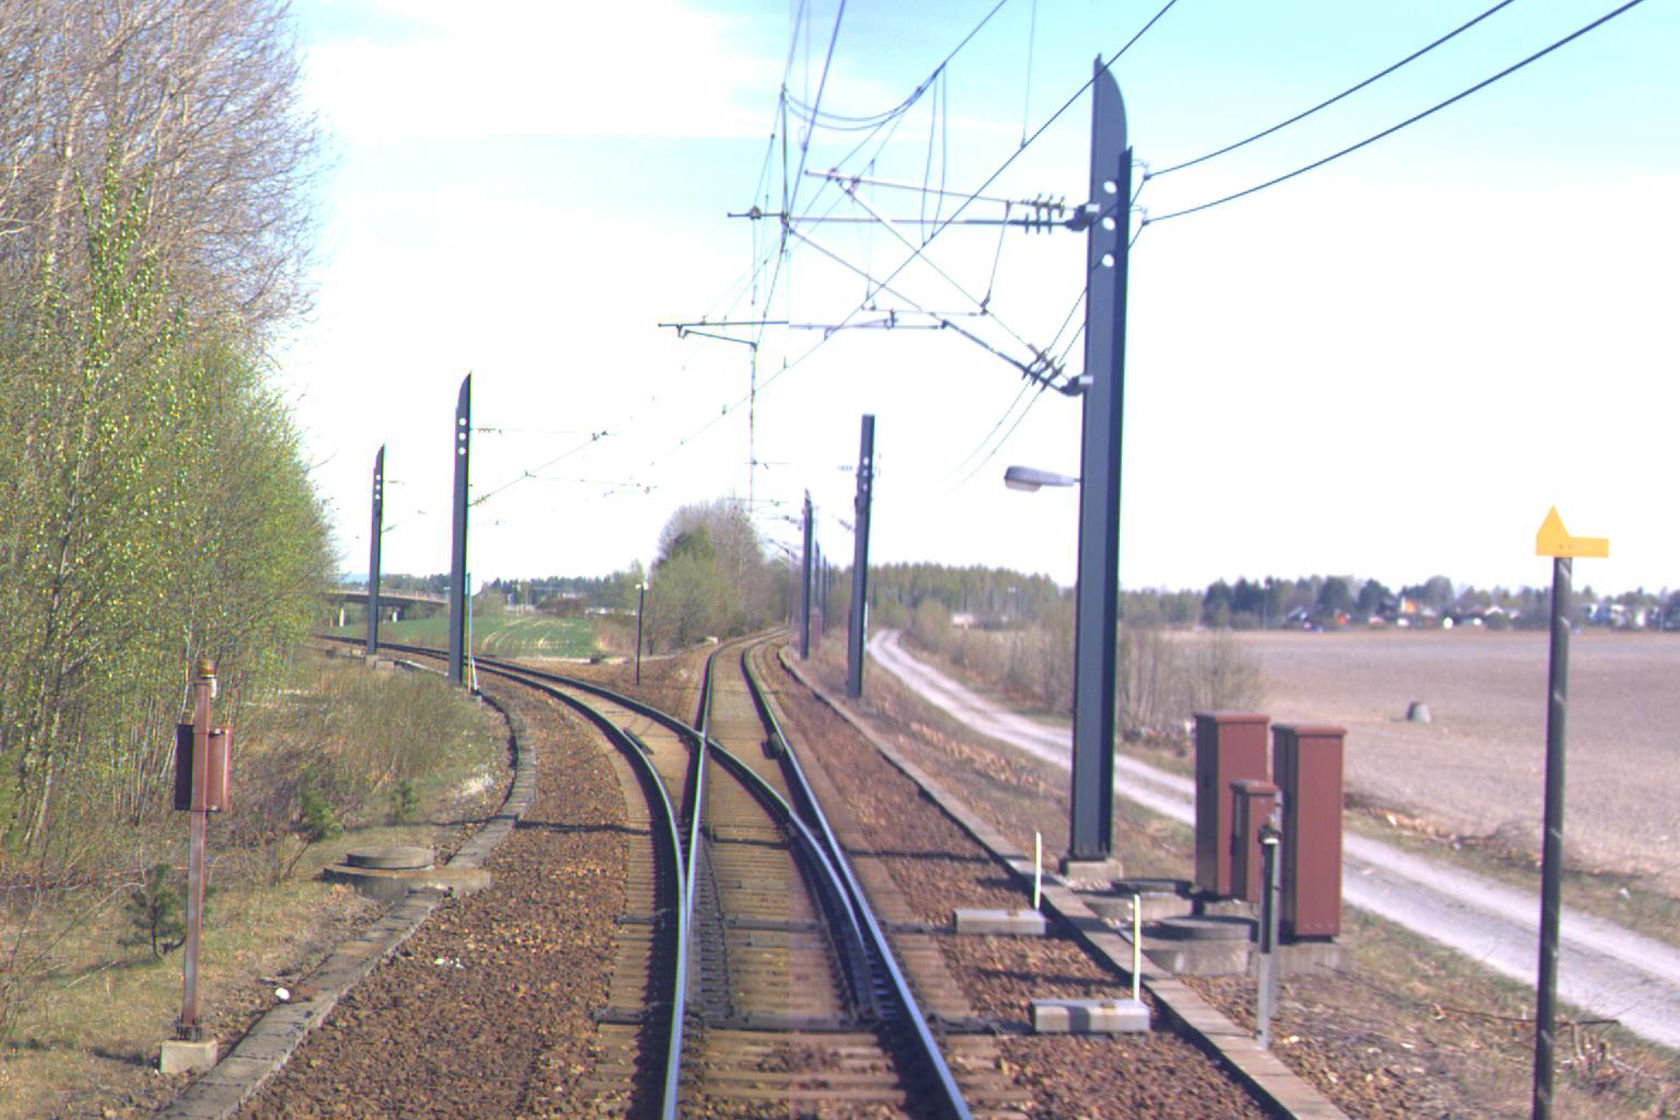 Tracks at Langeland station